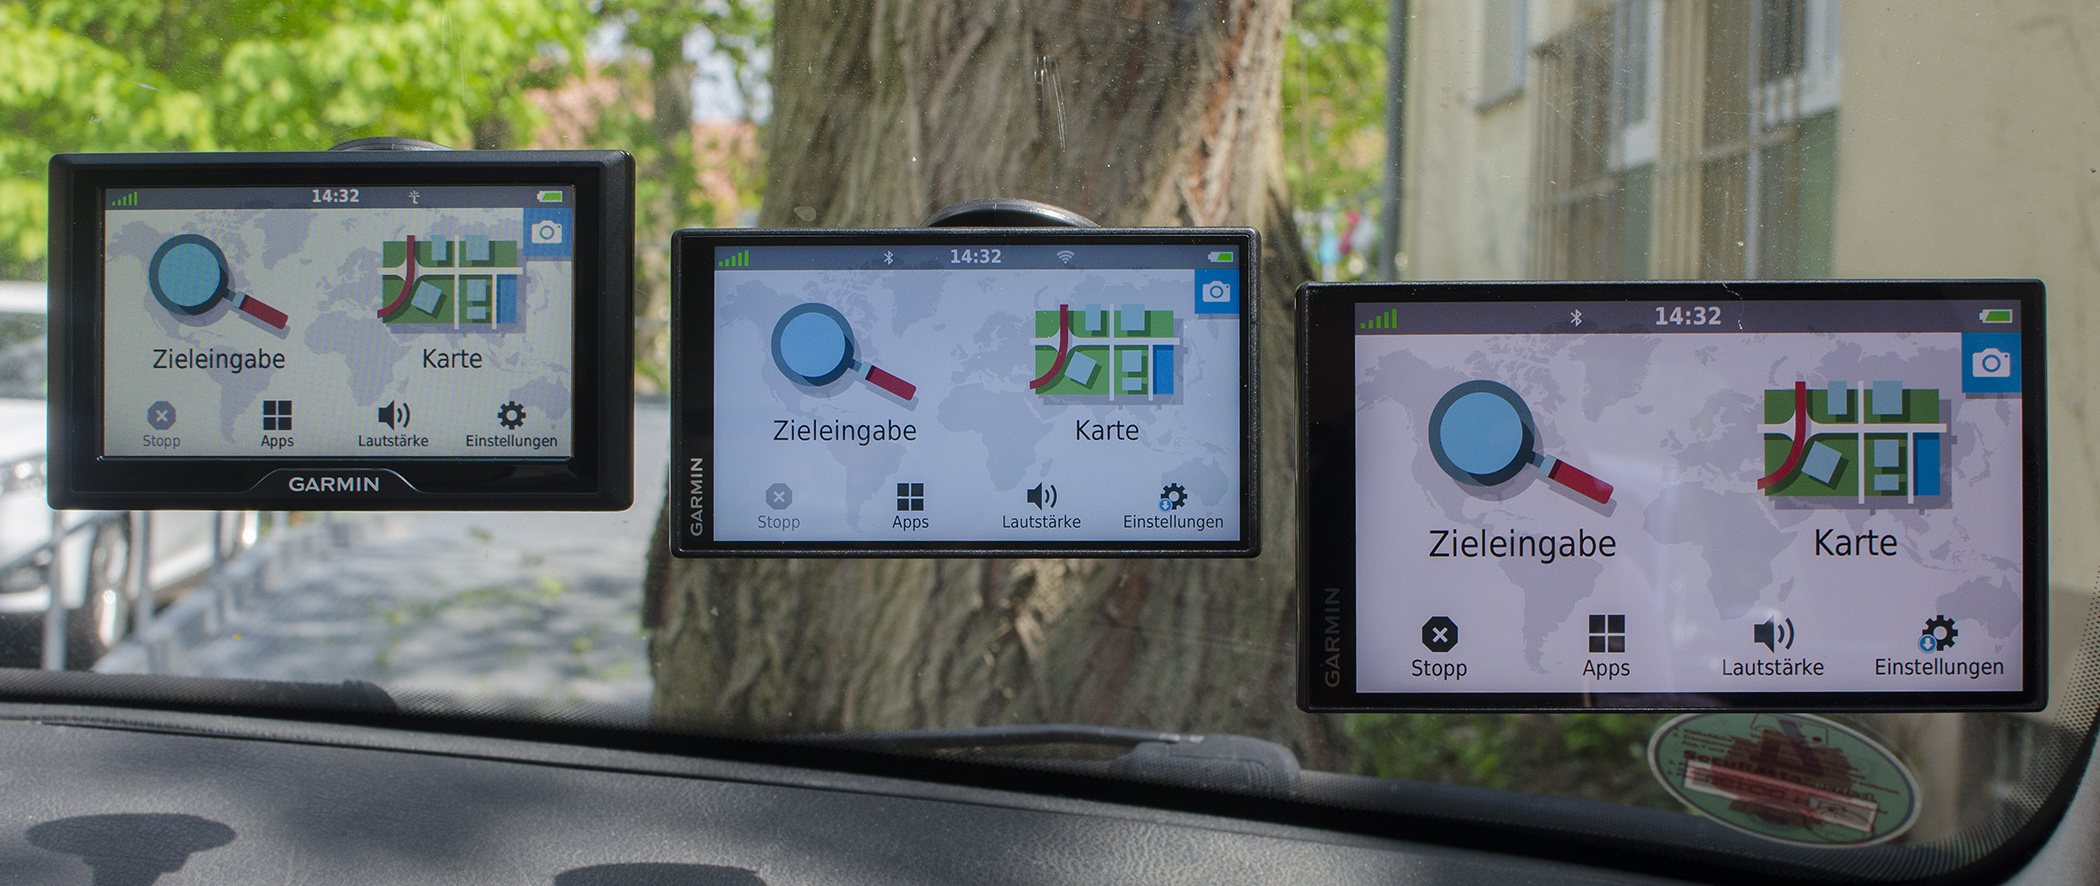 GPS Navigation POIs 55 › | | Drive Drive Test & pocketnavigation.de + Garmin | Smart Blitzer 65 52 |